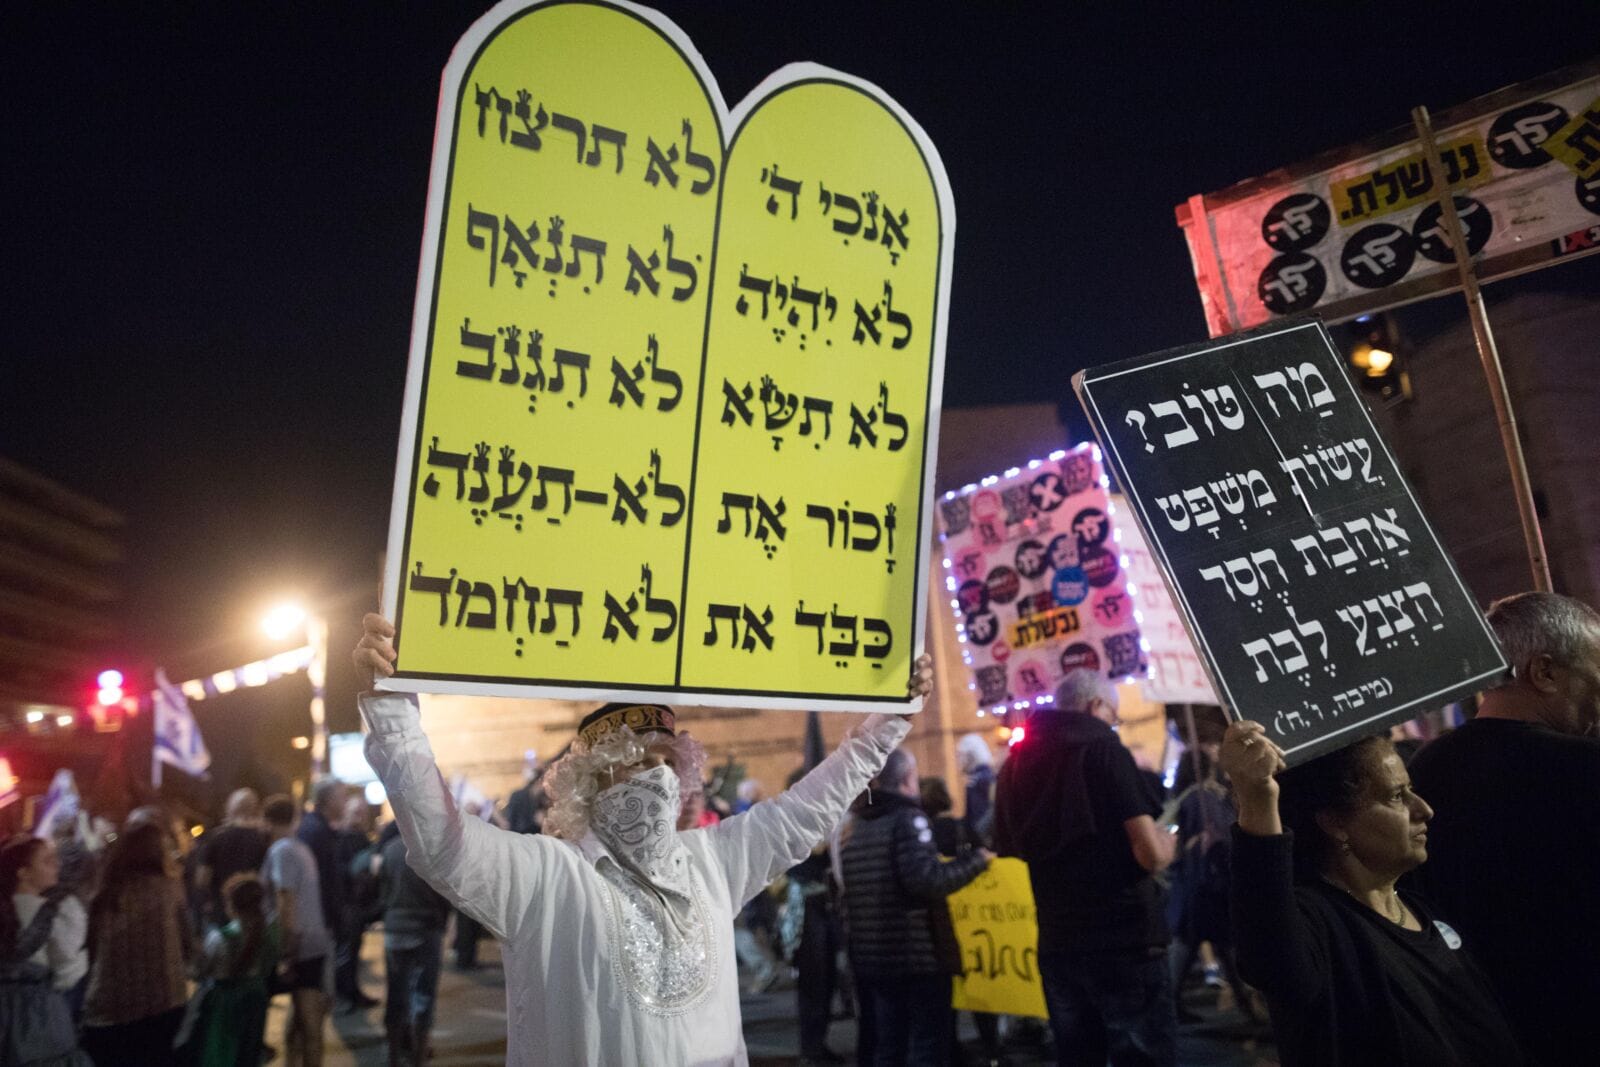 הפגנה נגד רה"מ בנימין נתניהו מחוץ למעון ראש הממשלה ברחוב בלפור בירושלים, 24.4.21 (צילום: נועם רבקין פנטון)